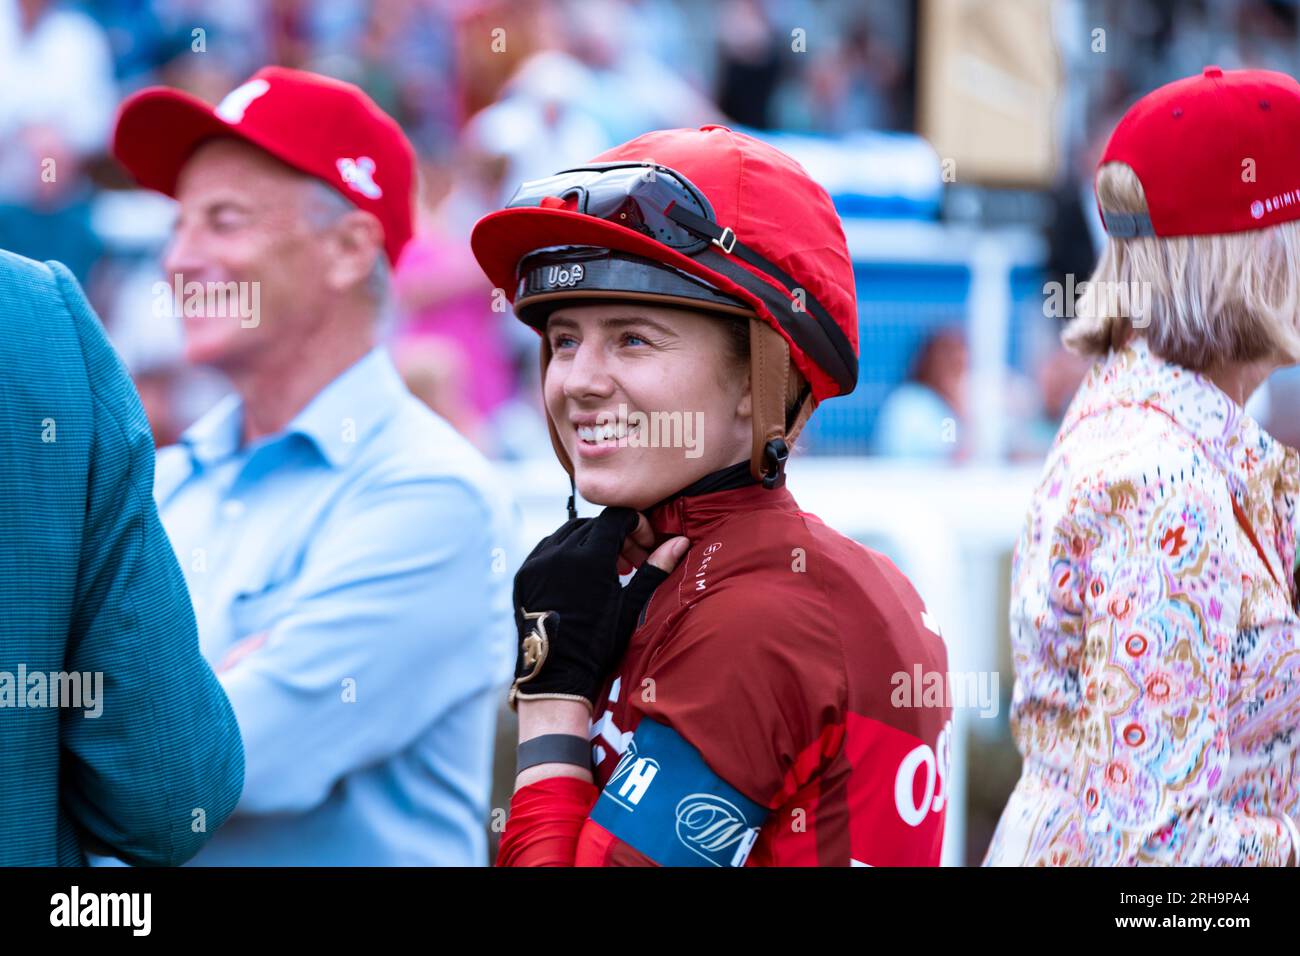 Femme jockey Saffie Osborne souriant à la Racing League week 2 Meeting à l'hippodrome de Chepstow. Banque D'Images